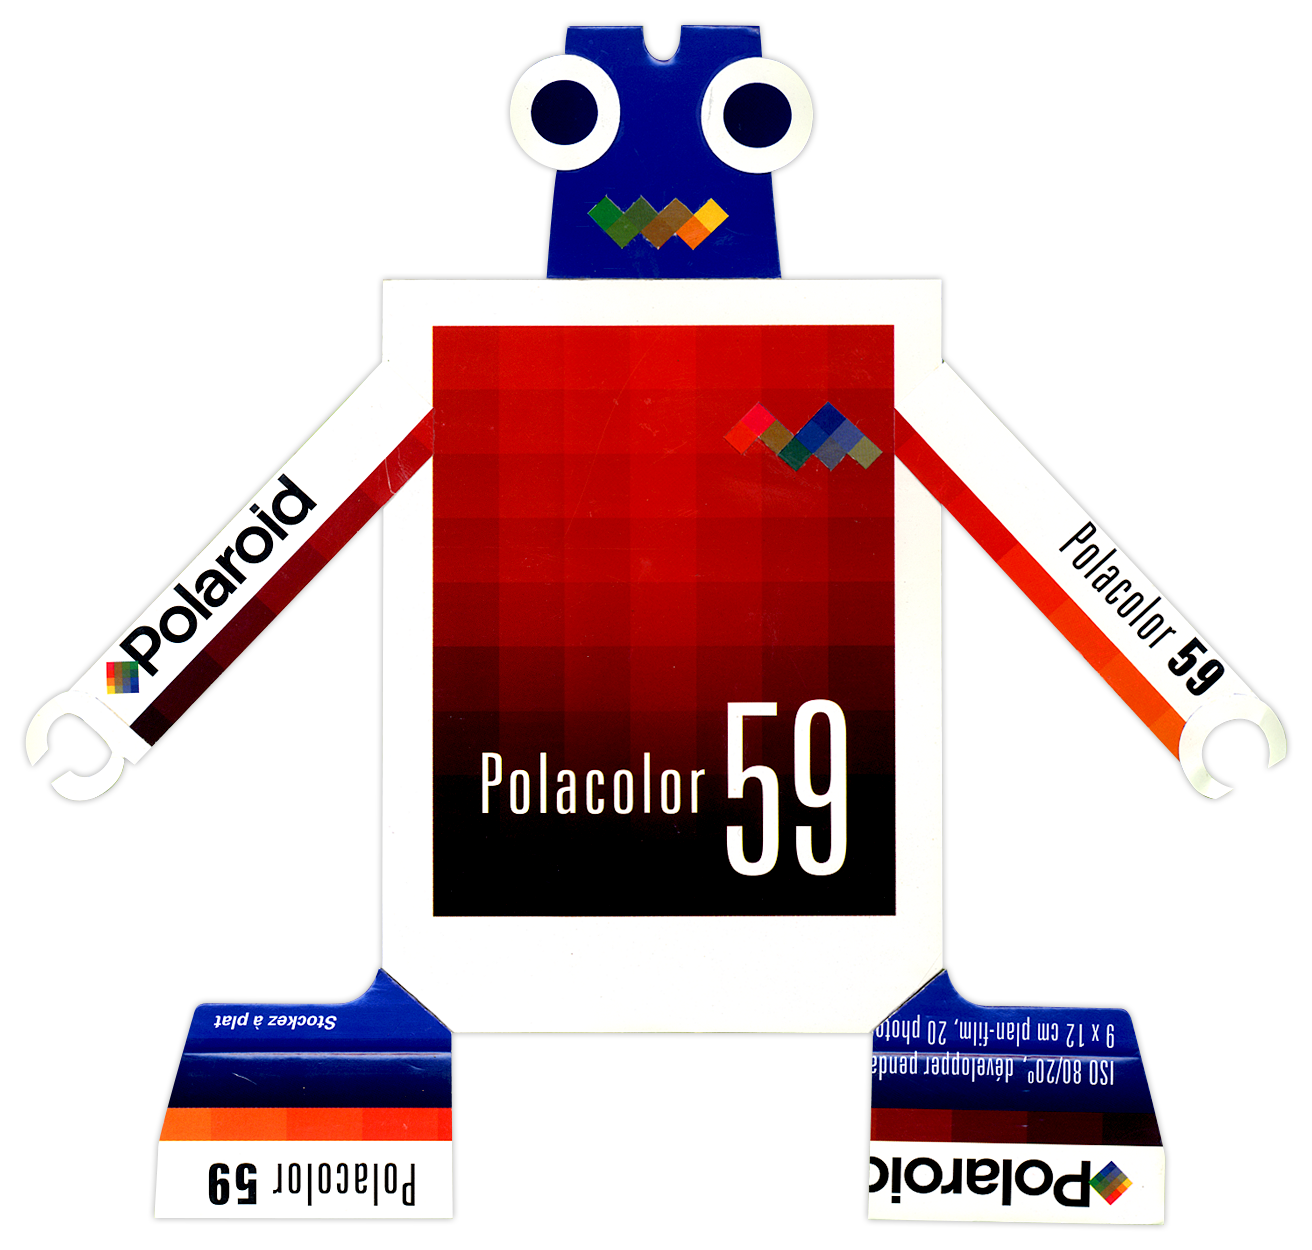 Polacolor 59 BoxBot 